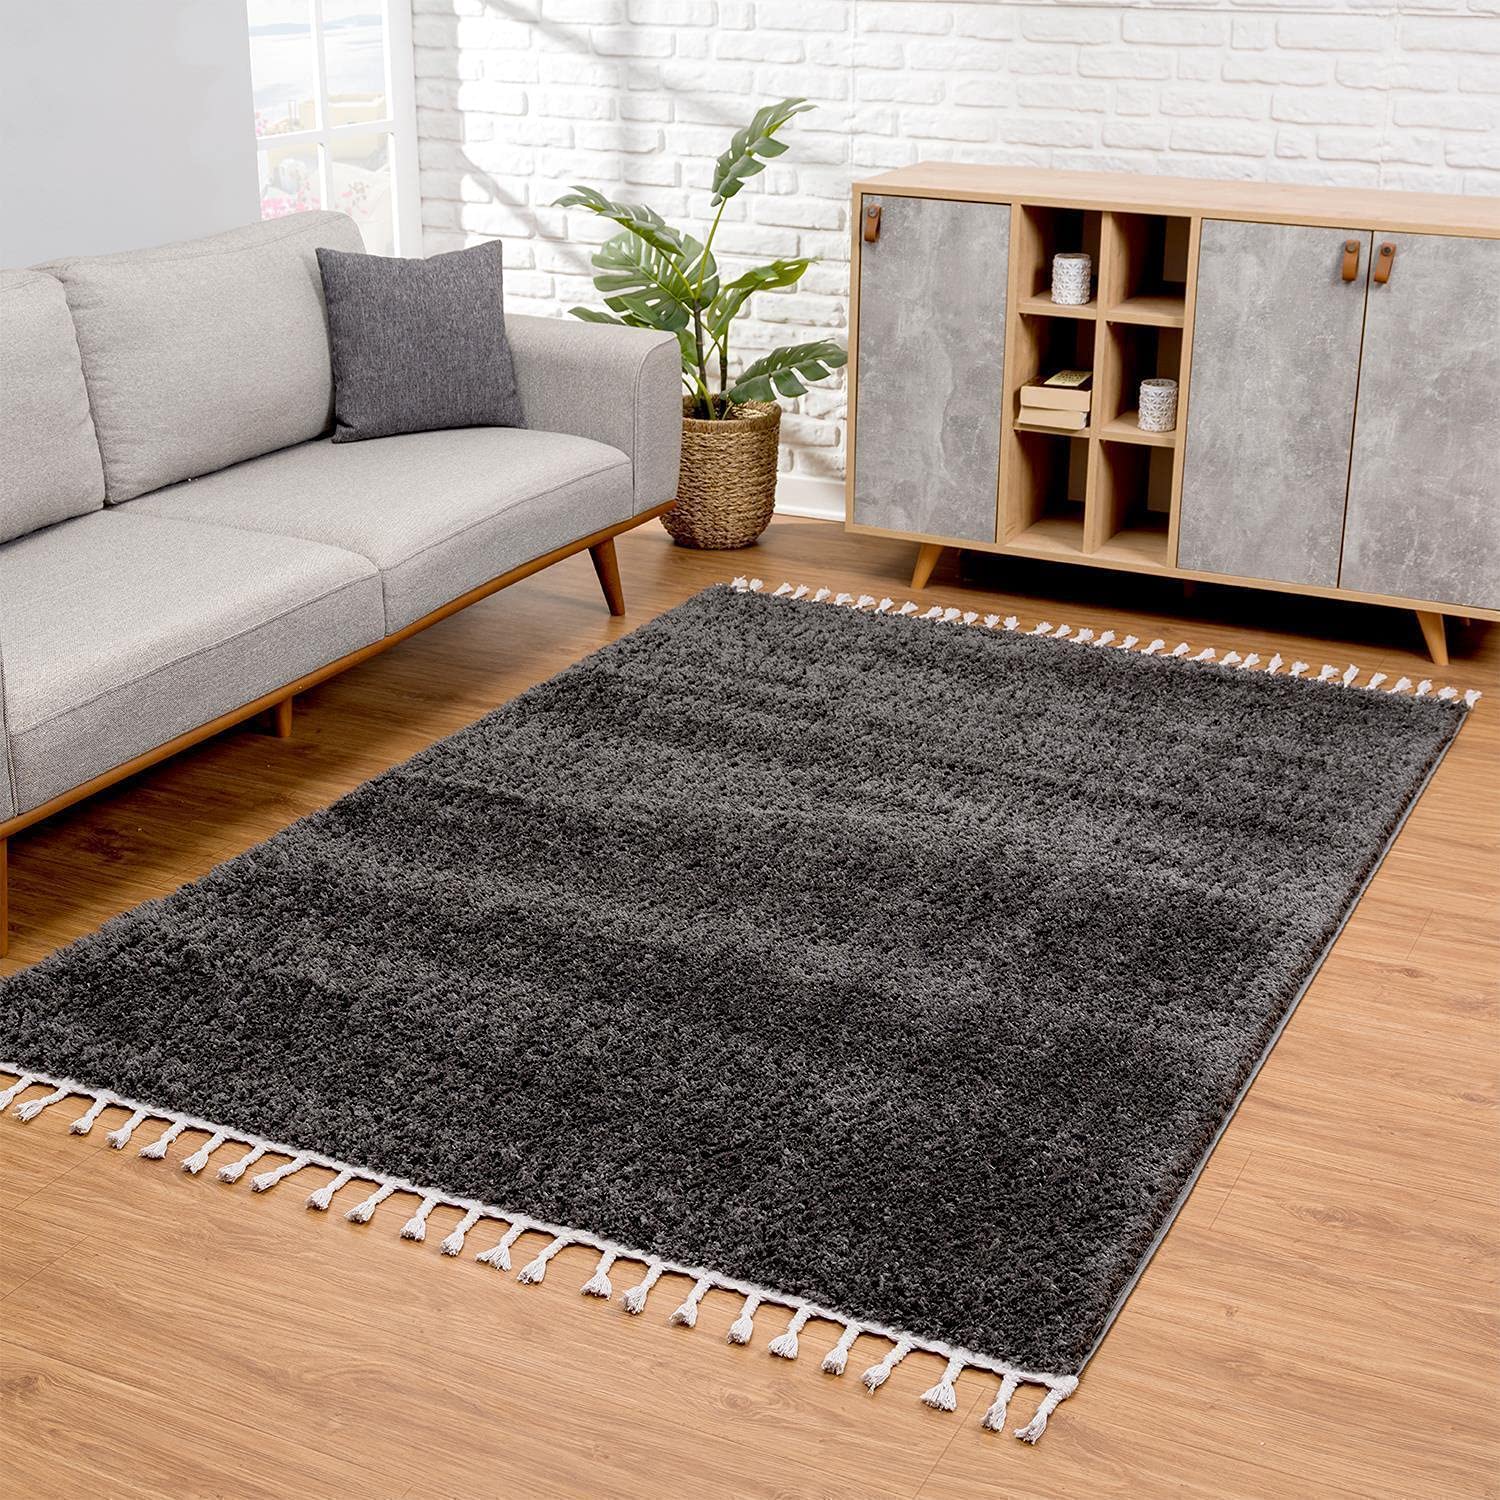 carpet city Hochflor Teppich Wohnzimmer - Einfarbig Schwarz - 120x160 cm - Shaggyteppich Langflor - Kettfäden - Schlafzimmerteppich Flauschig Weich - Moderne Wohnzimmerteppiche